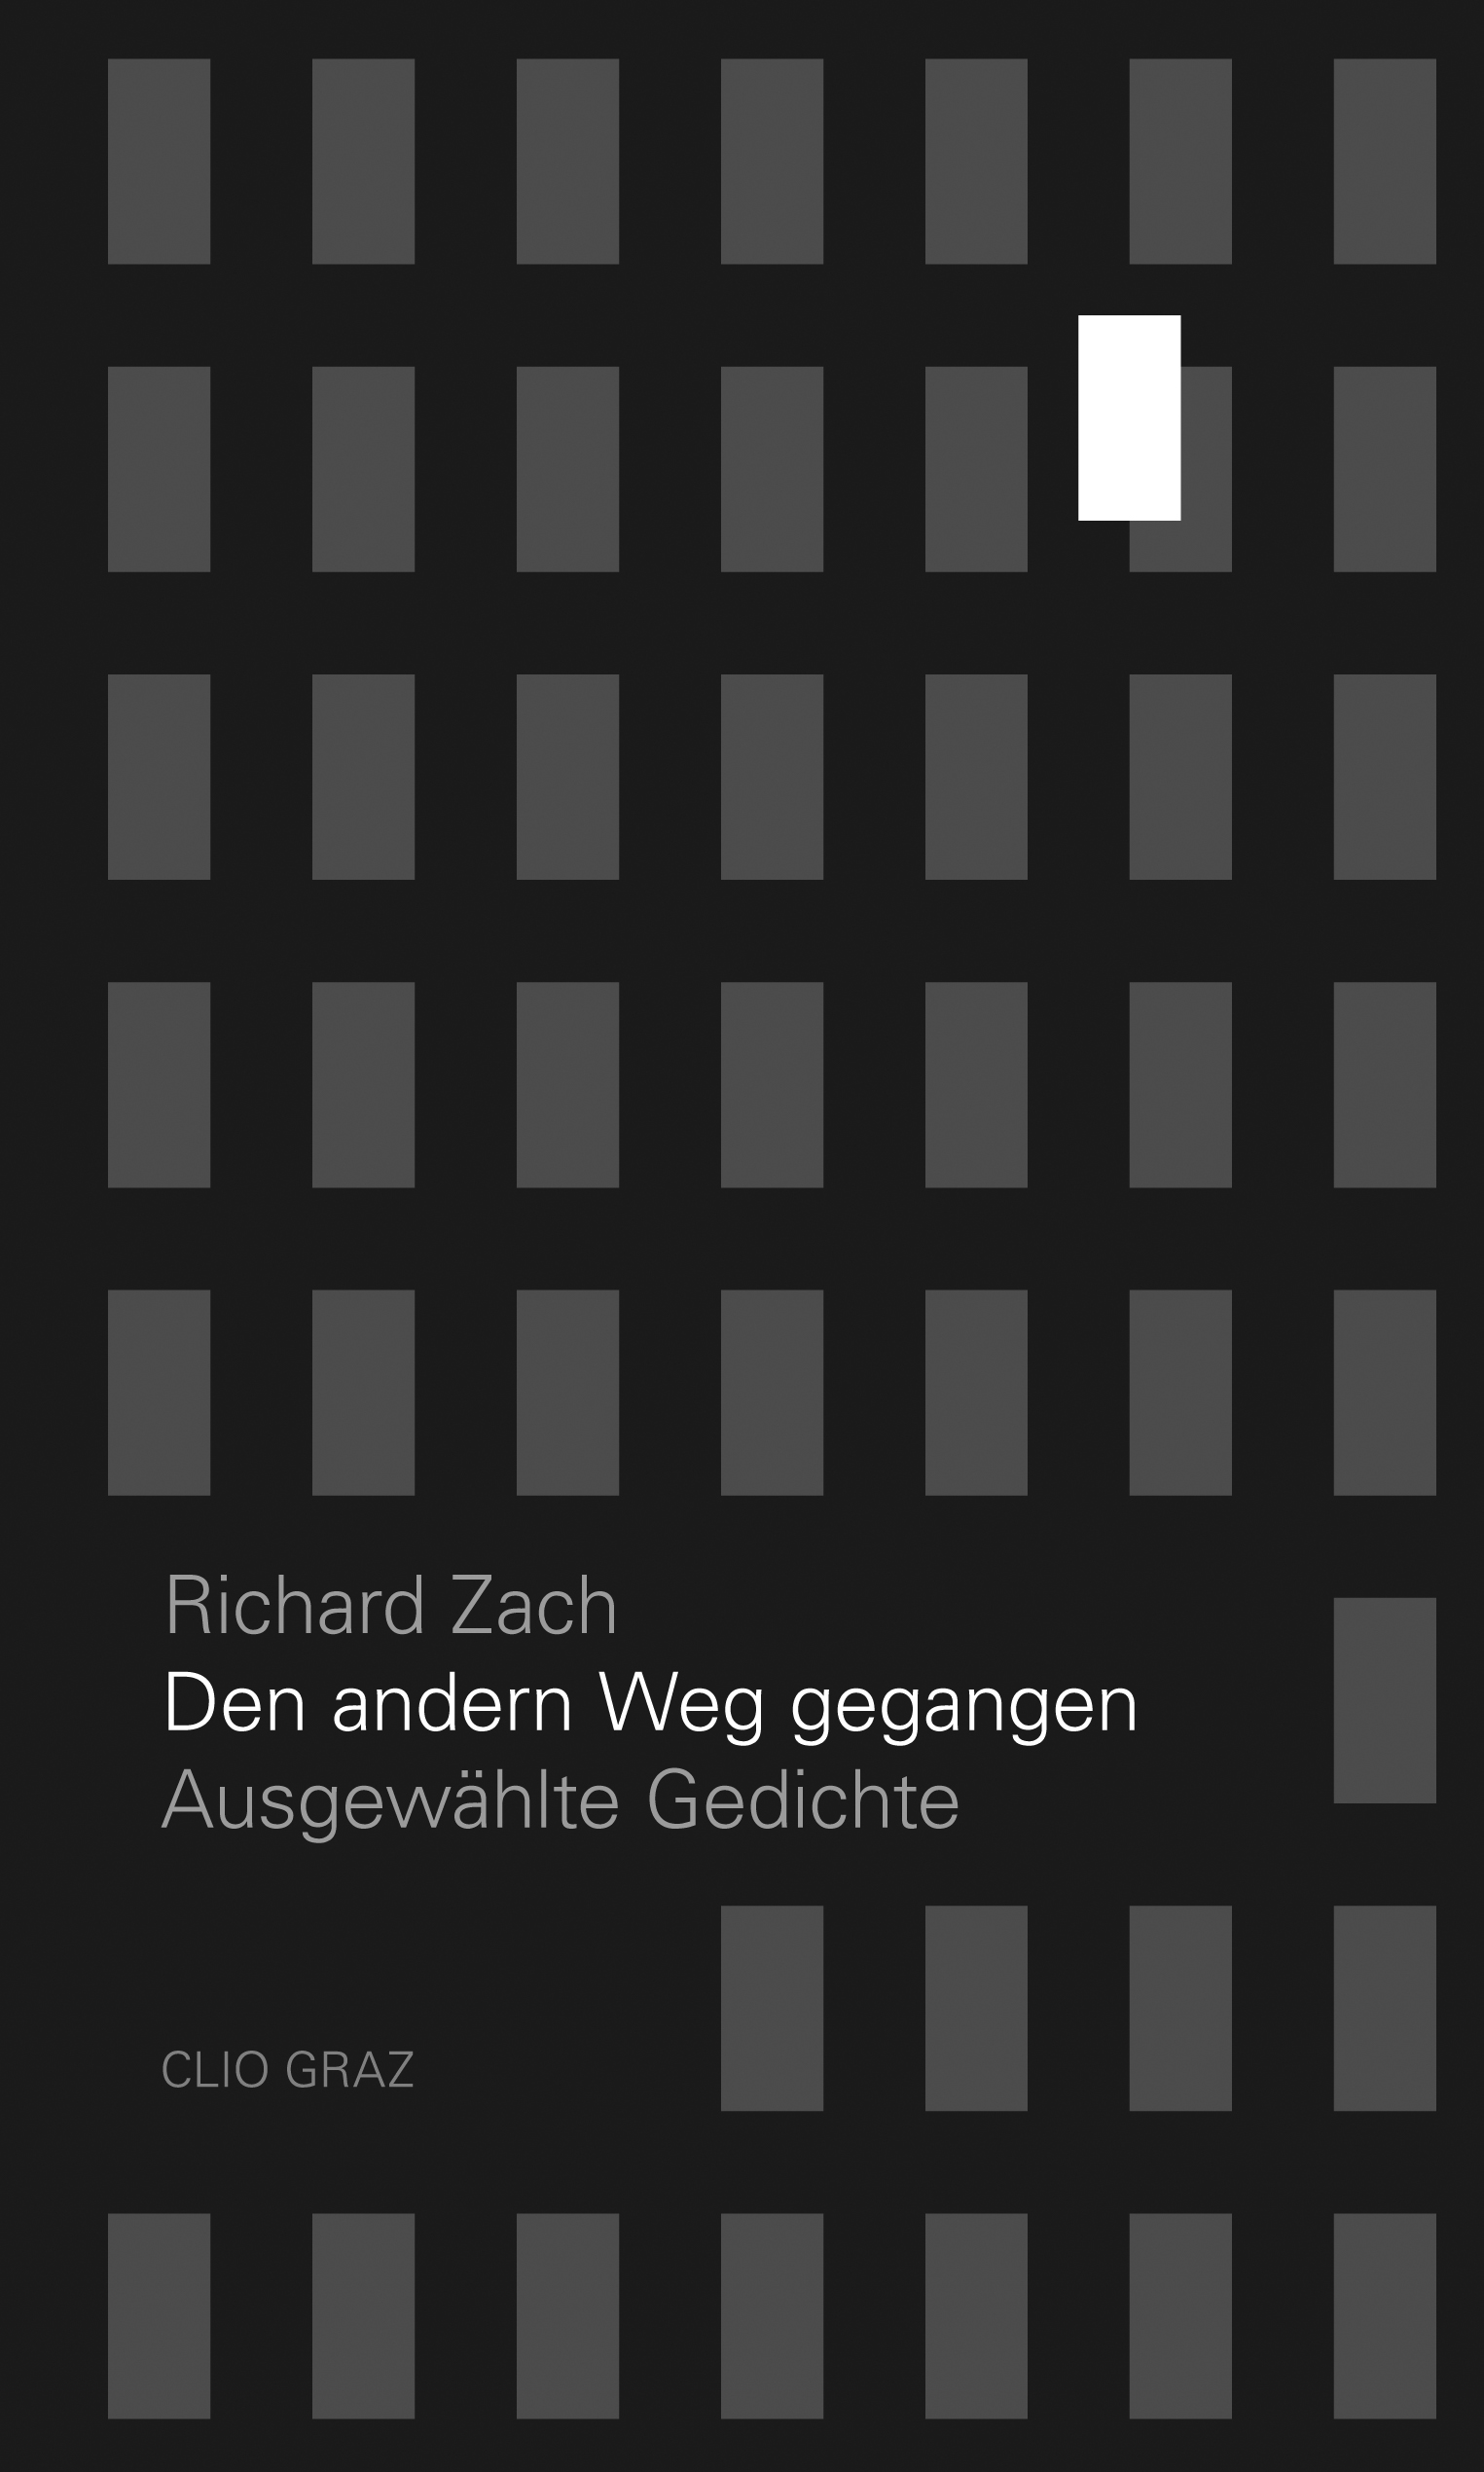 Richard Zach: Den anderen Weg gegangen. Ausgewählte Gedichte. Hg. und mit einem Nachwort von Karl Wimmler. Geb., 168 Seiten (ISBN 978-3-902542-52-6). CLIO: Graz 2017, Euro 18,00